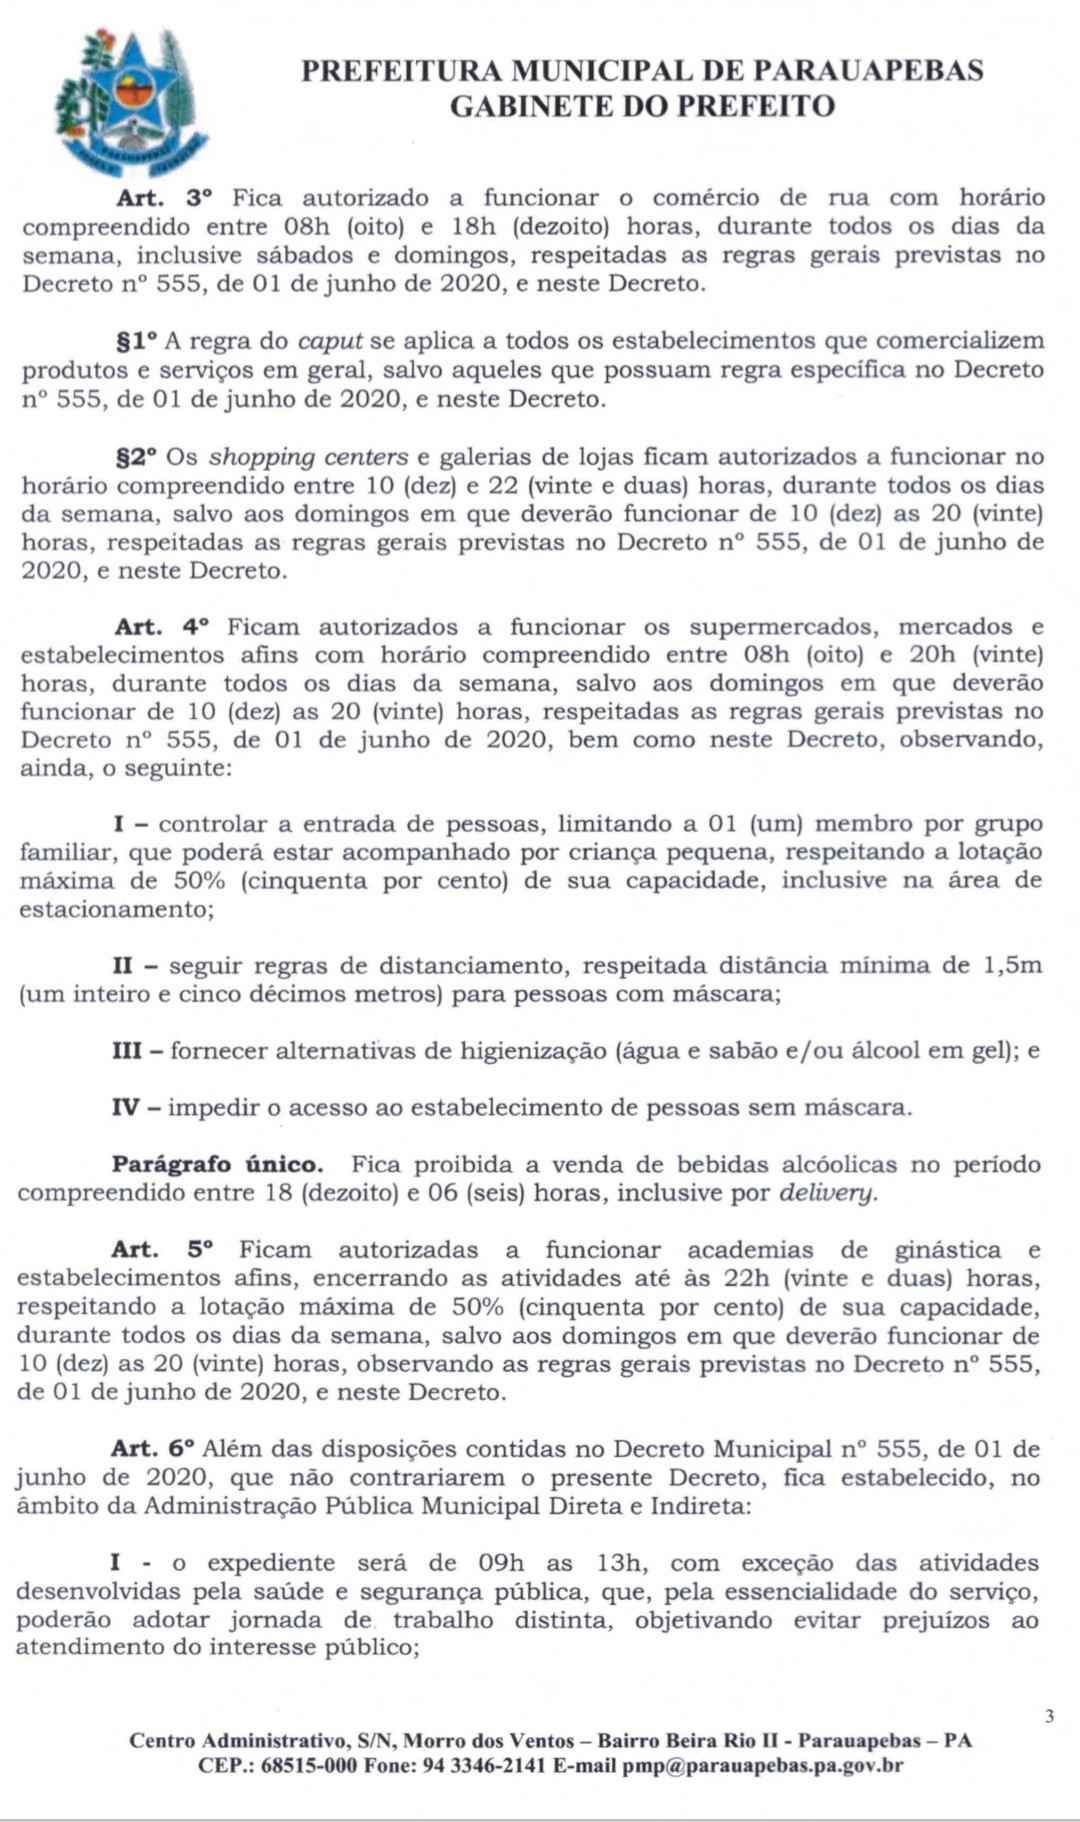 Prefeitura de Parauapebas publica novo decreto com medidas de prevenção a Covid-19